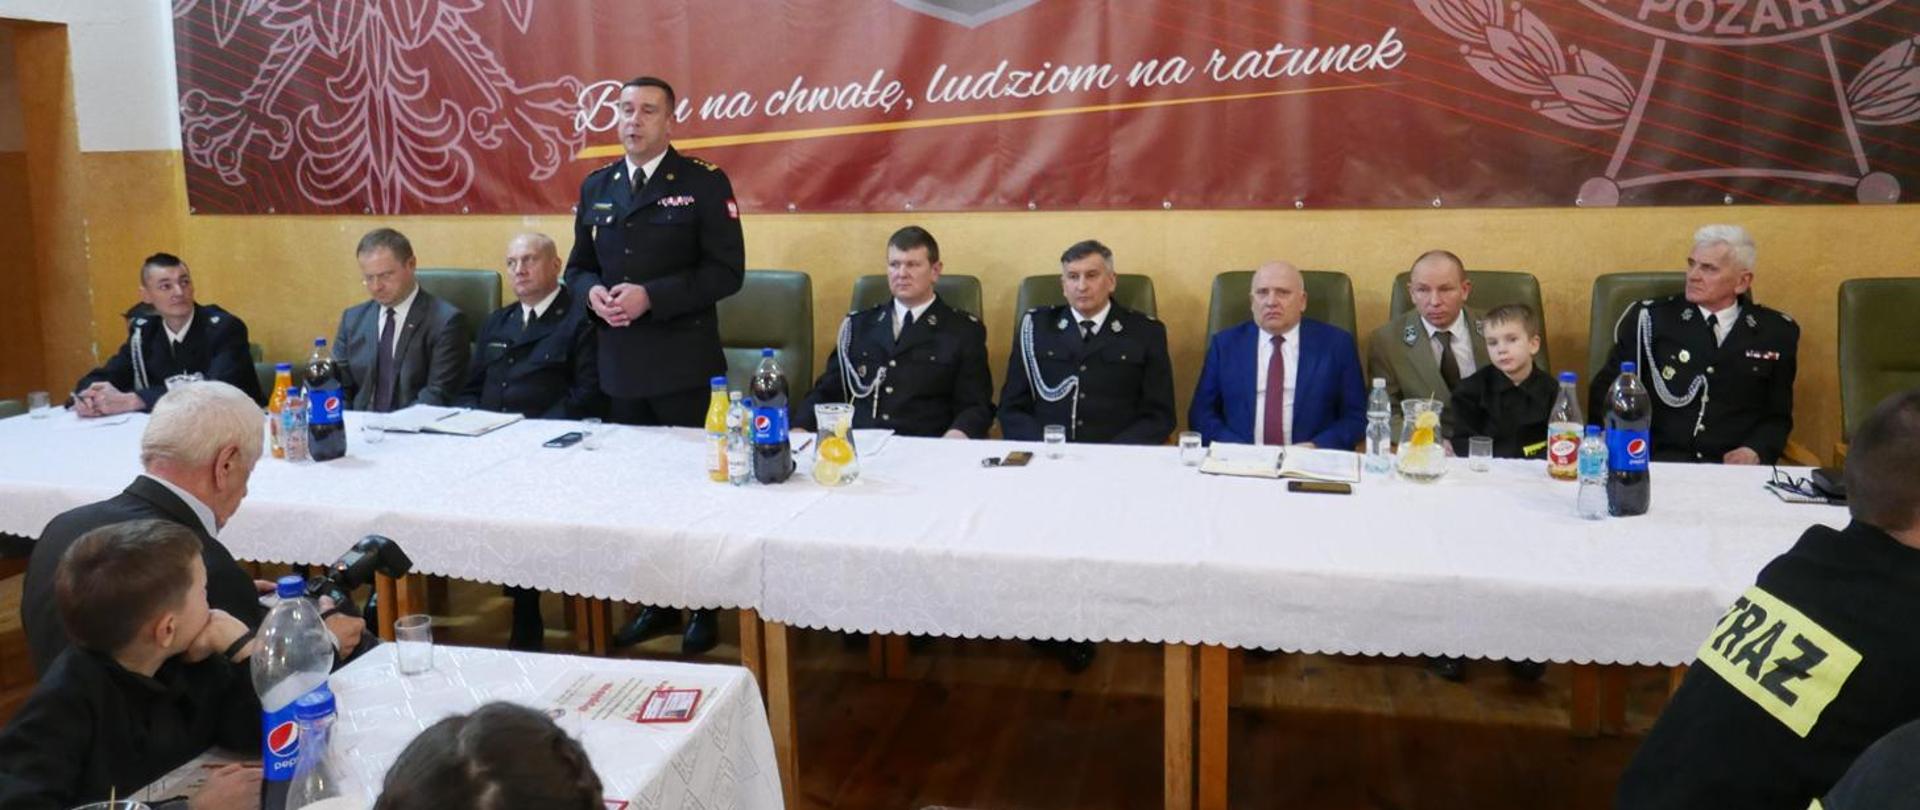 Na zdjęciu widzimy przemawiającego zastępcę komendanta wojewódzkiego do zgromadzonych strażaków OSP.